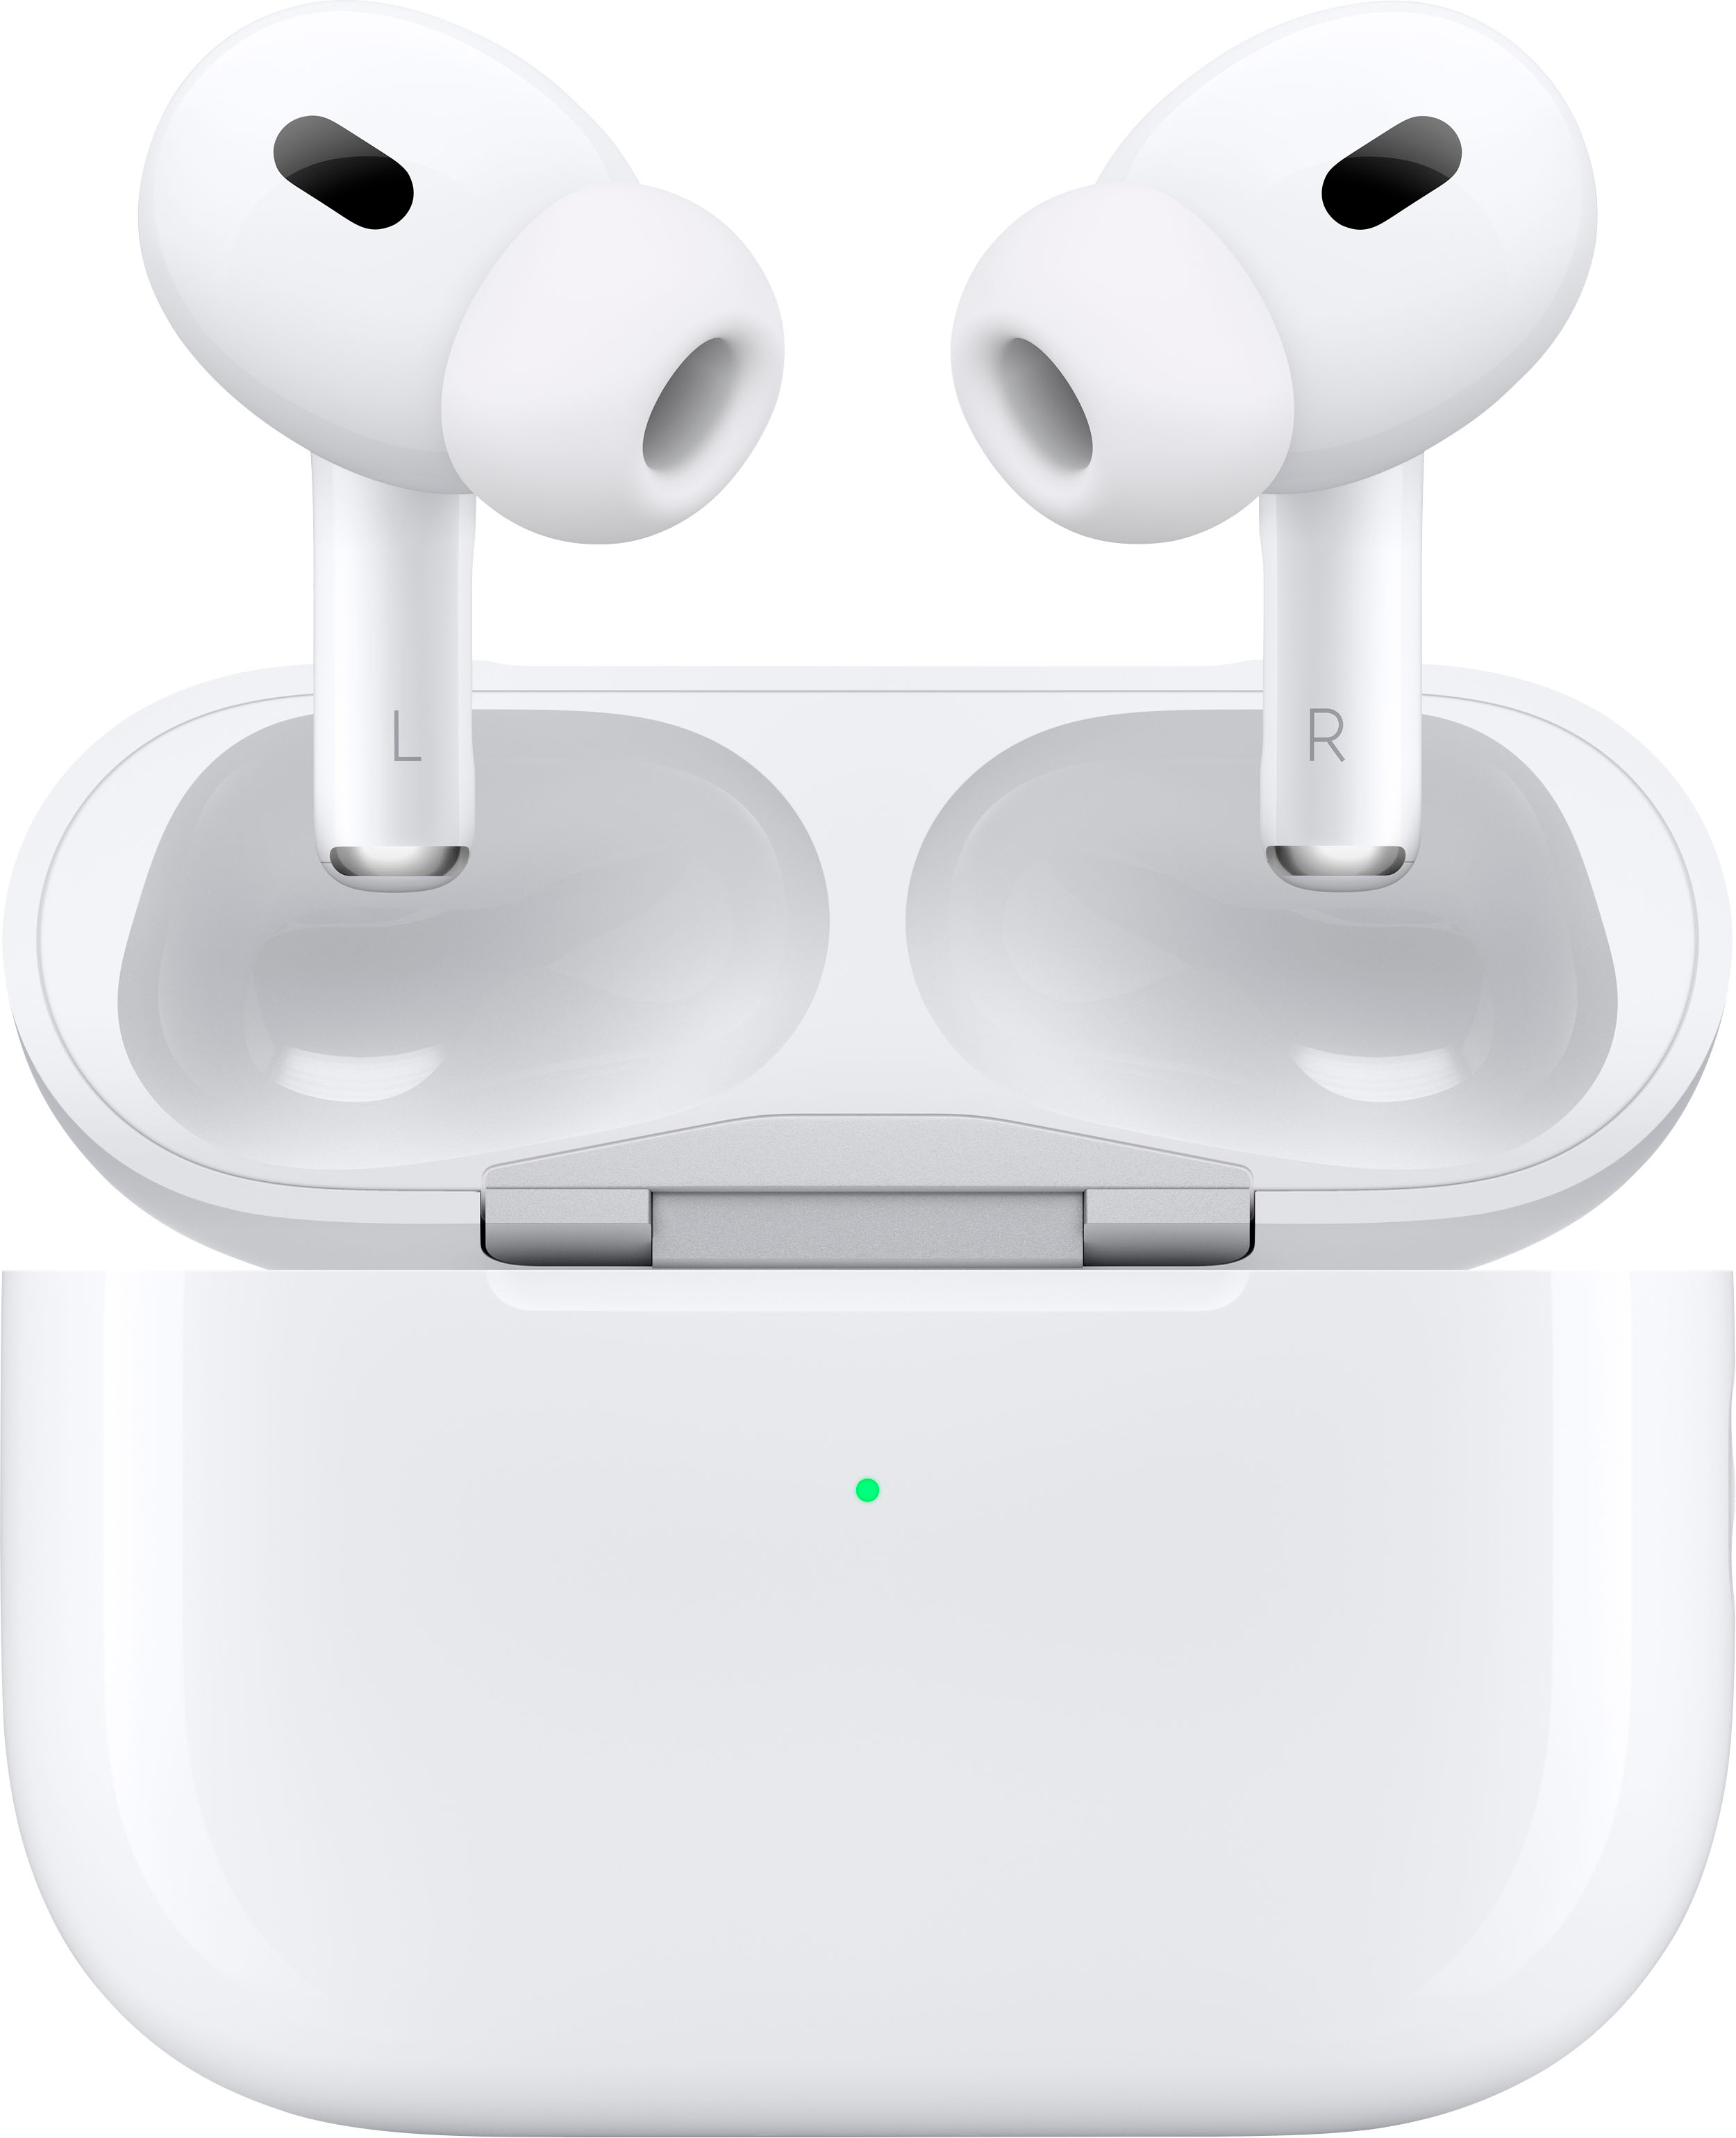 एअरपॉड्स प्रो 2 सर्वोत्कृष्ट ऑफर - 4 महिने Apple पल संगीत